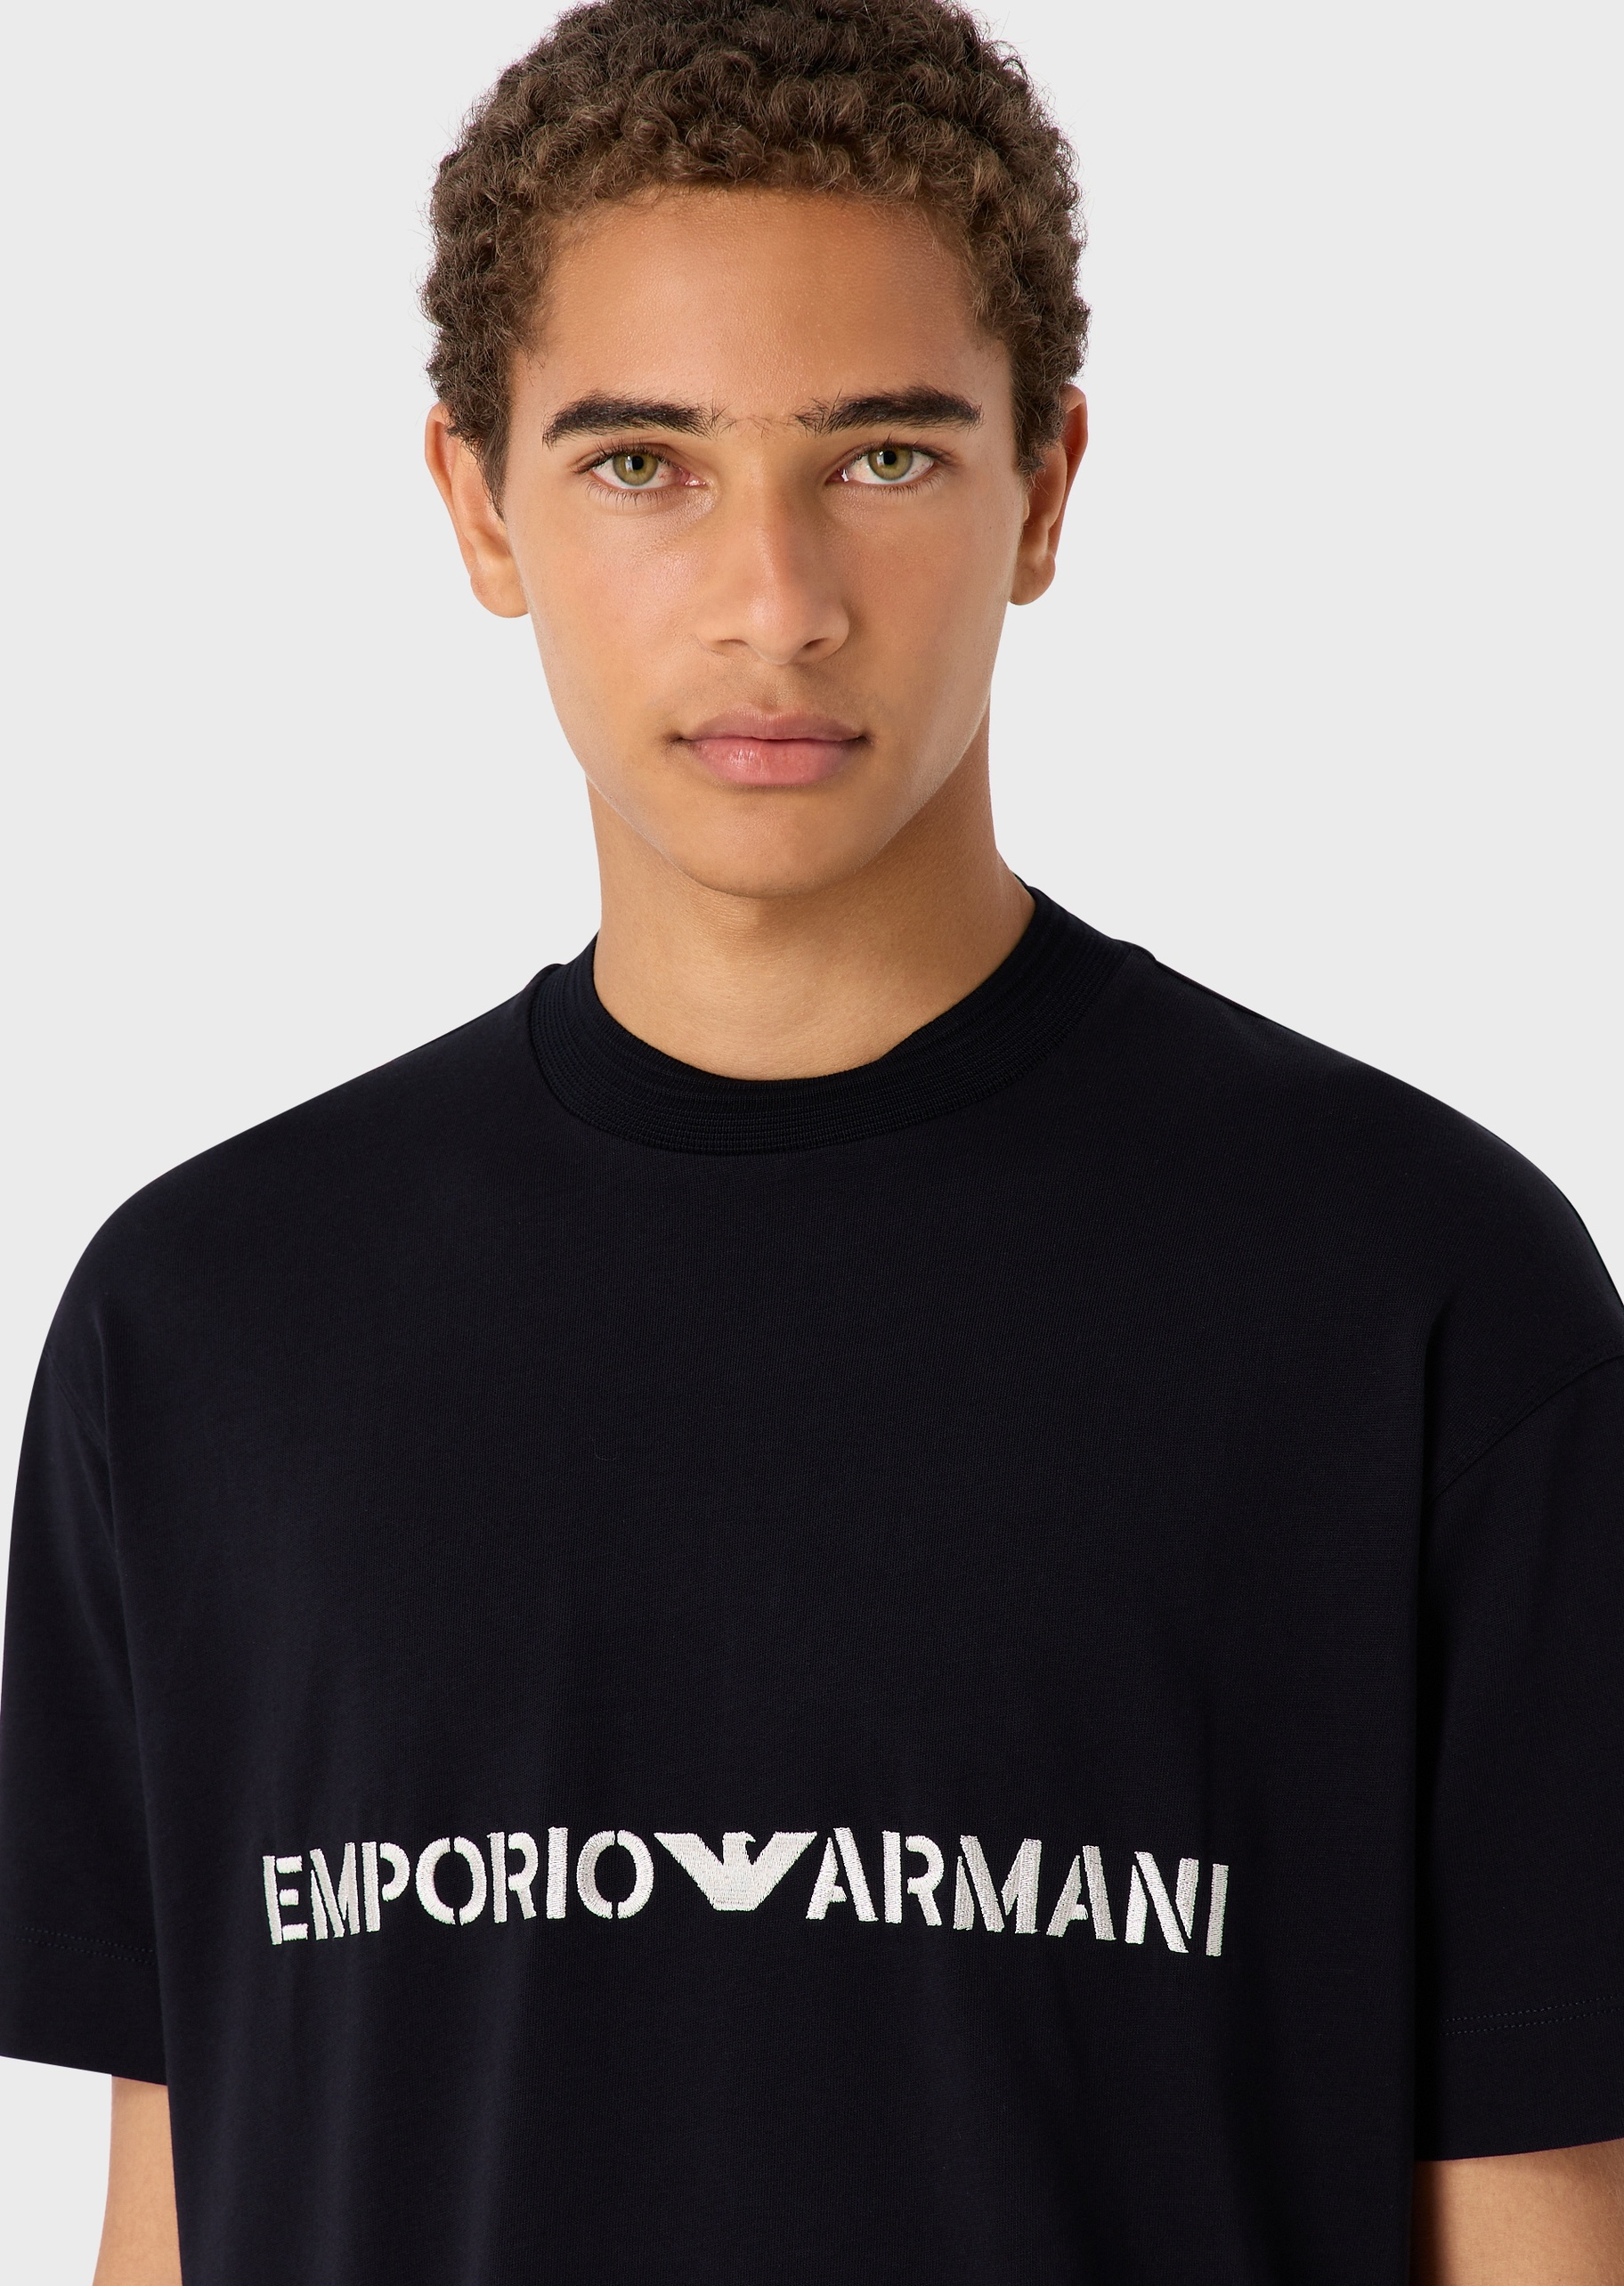 Emporio Armani 男士军装风刺绣标棉质T恤